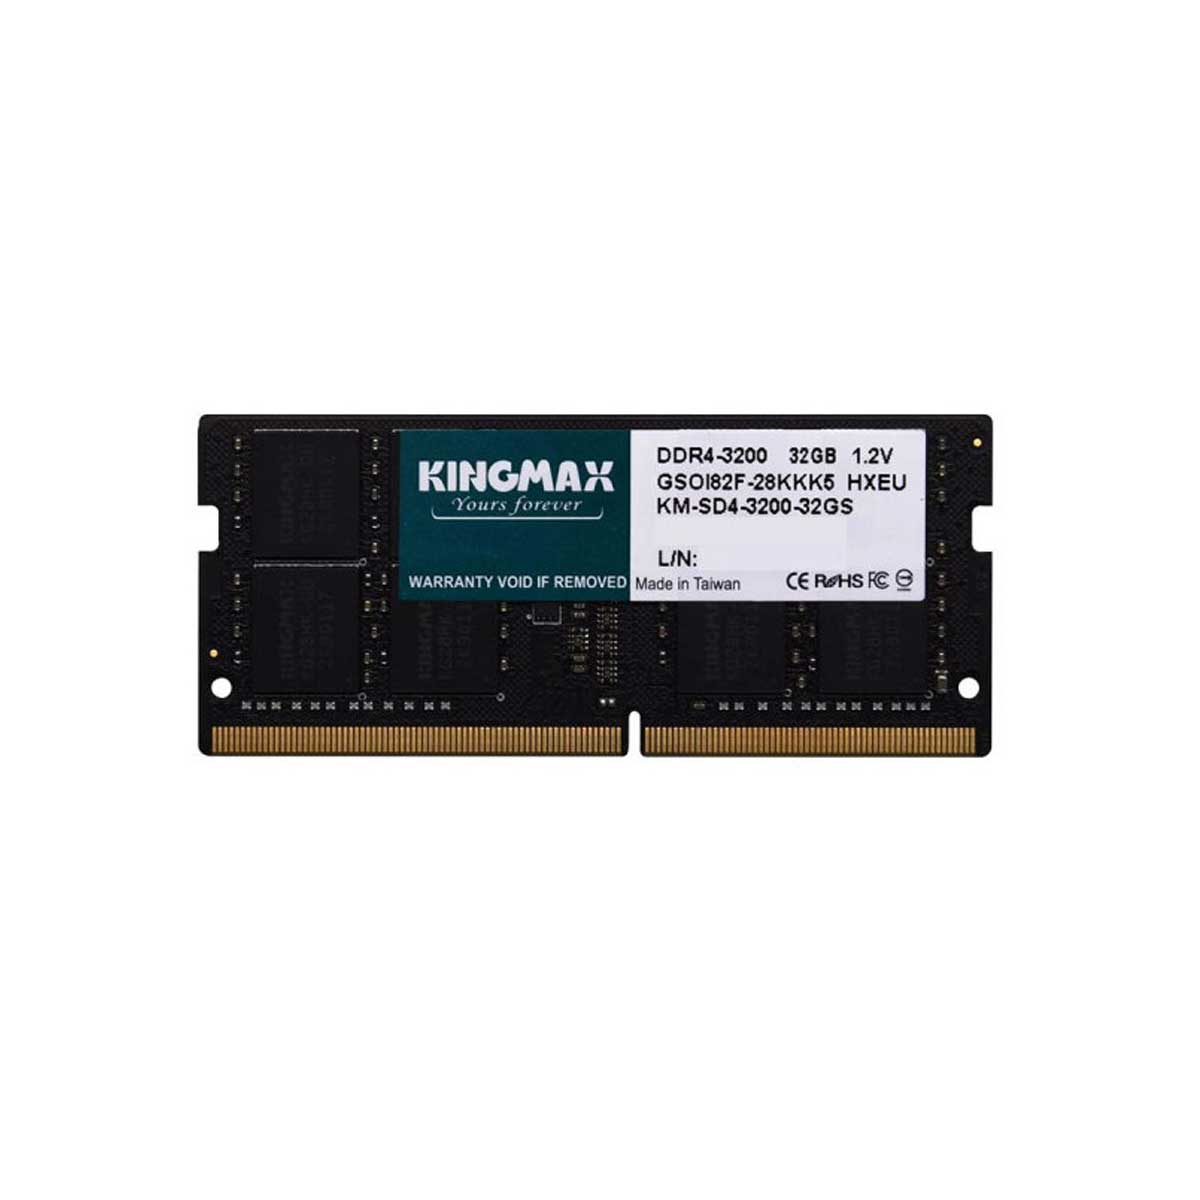 Kingmax DDR4 3200MHz CL22 Singlel Channel Laptop RAM 32GB